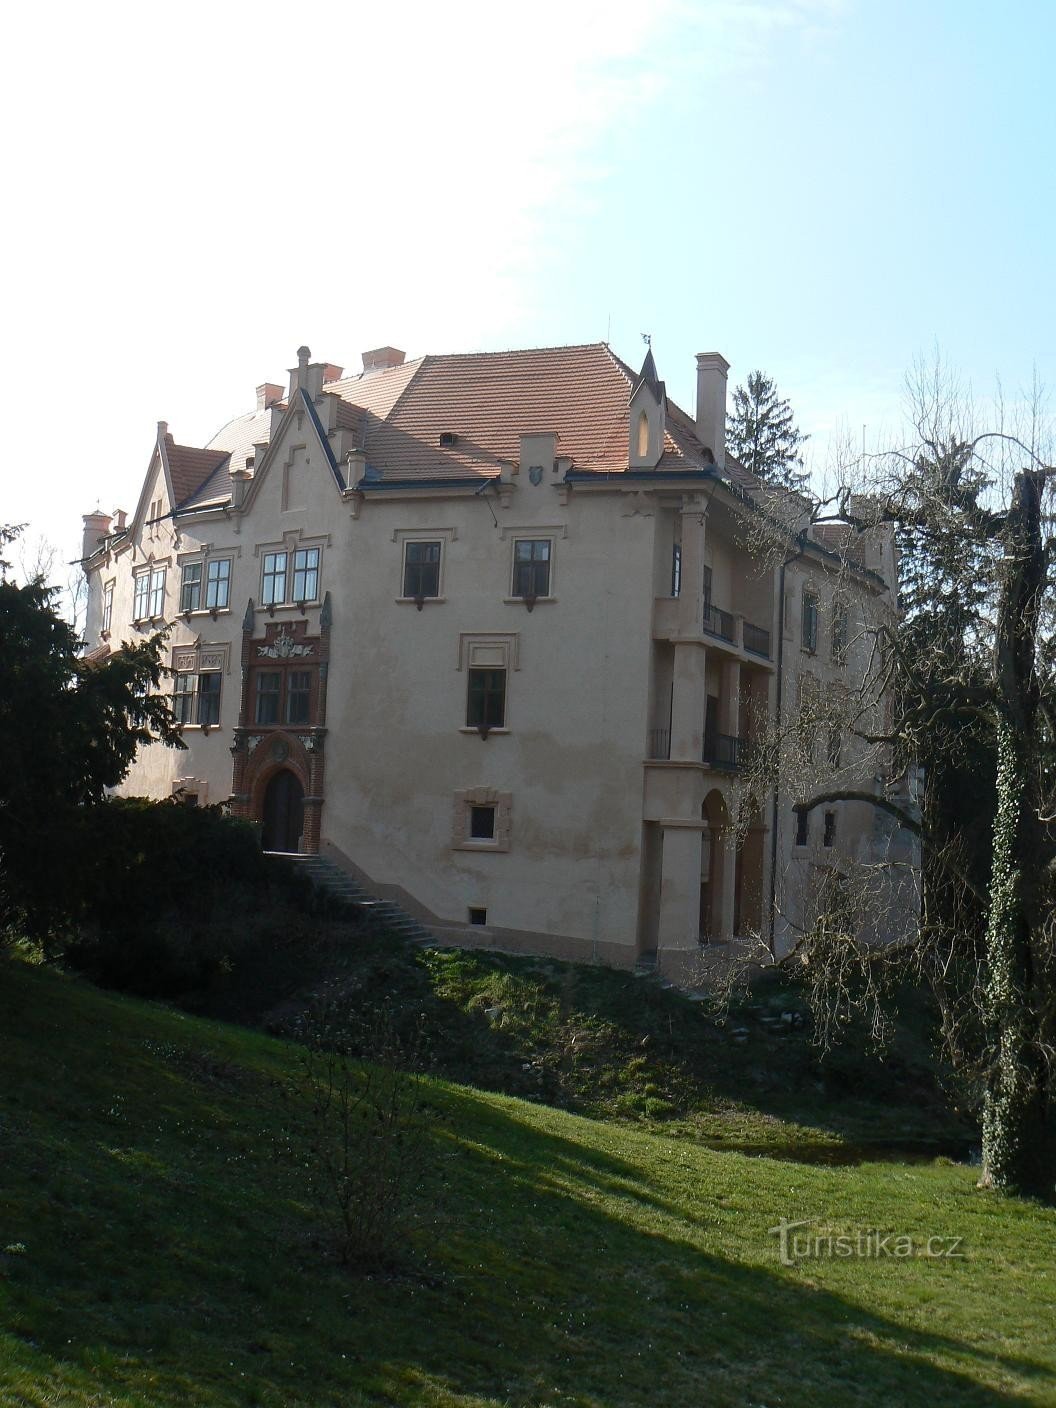 vue du château depuis le parc